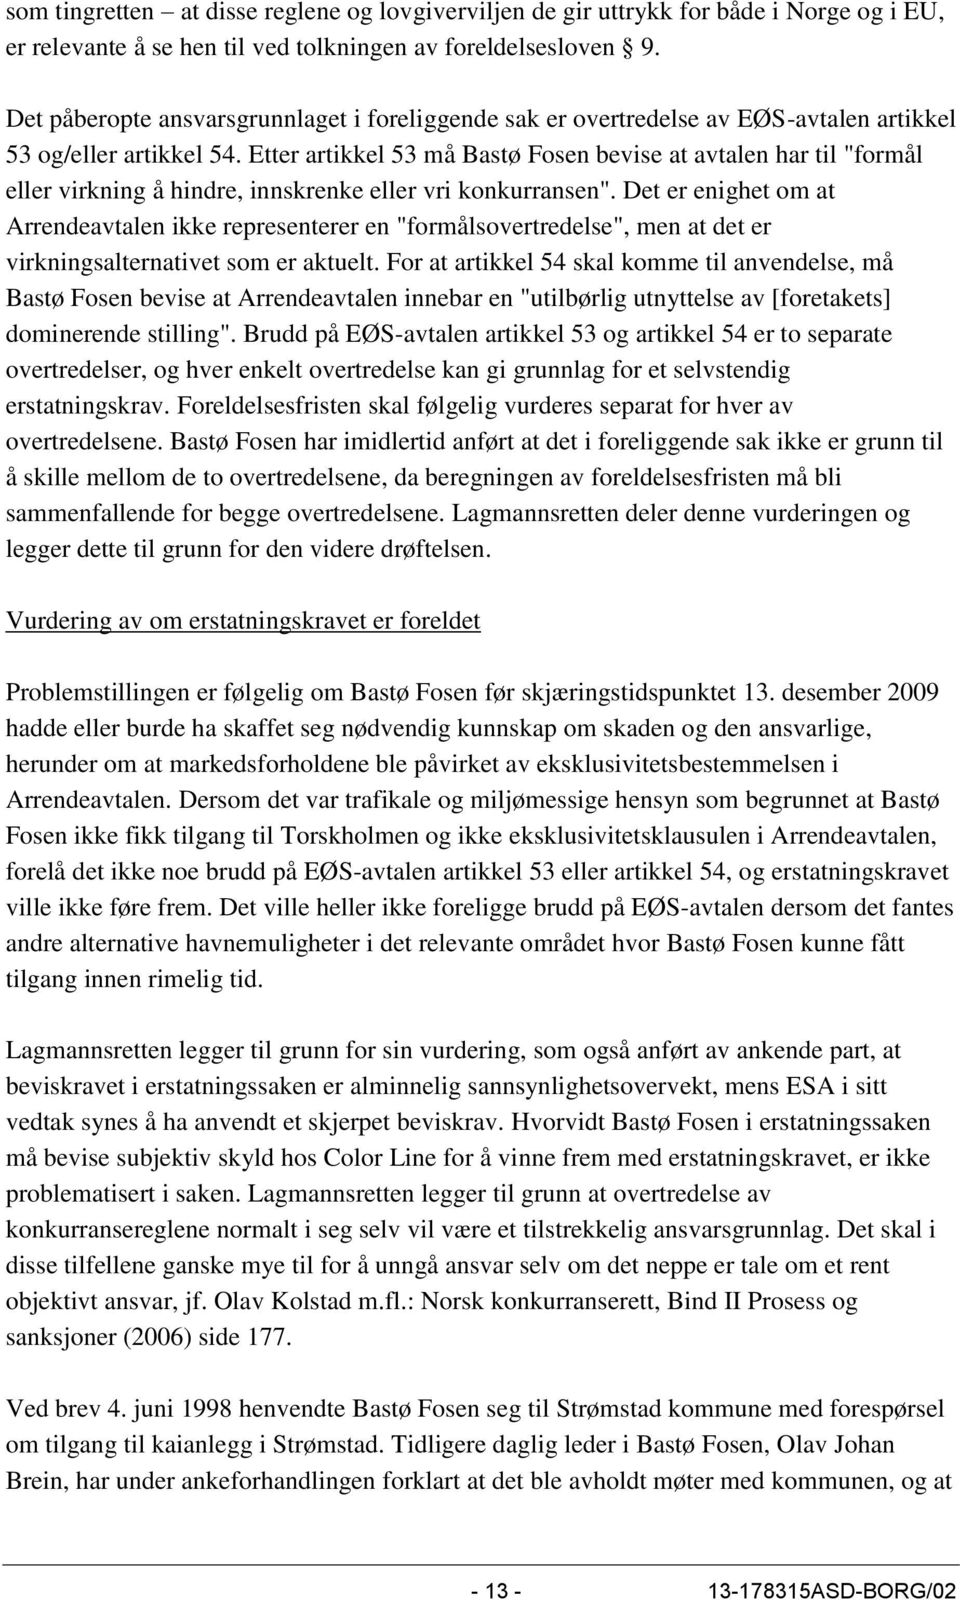 Etter artikkel 53 må Bastø Fosen bevise at avtalen har til "formål eller virkning å hindre, innskrenke eller vri konkurransen".